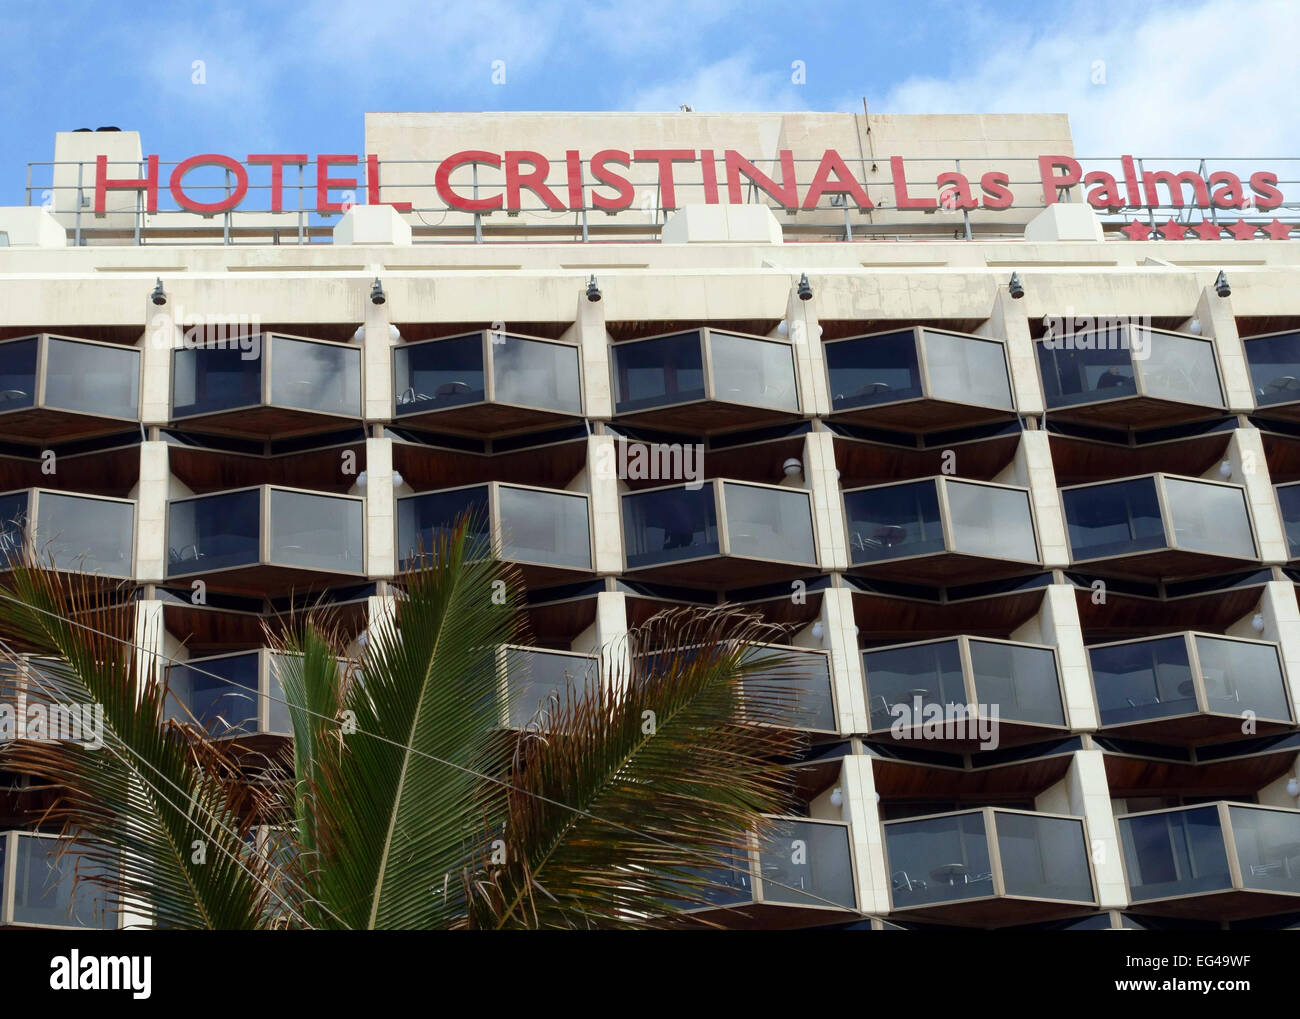 Hotel cristina las palmas gran fotografías e imágenes de alta resolución -  Alamy